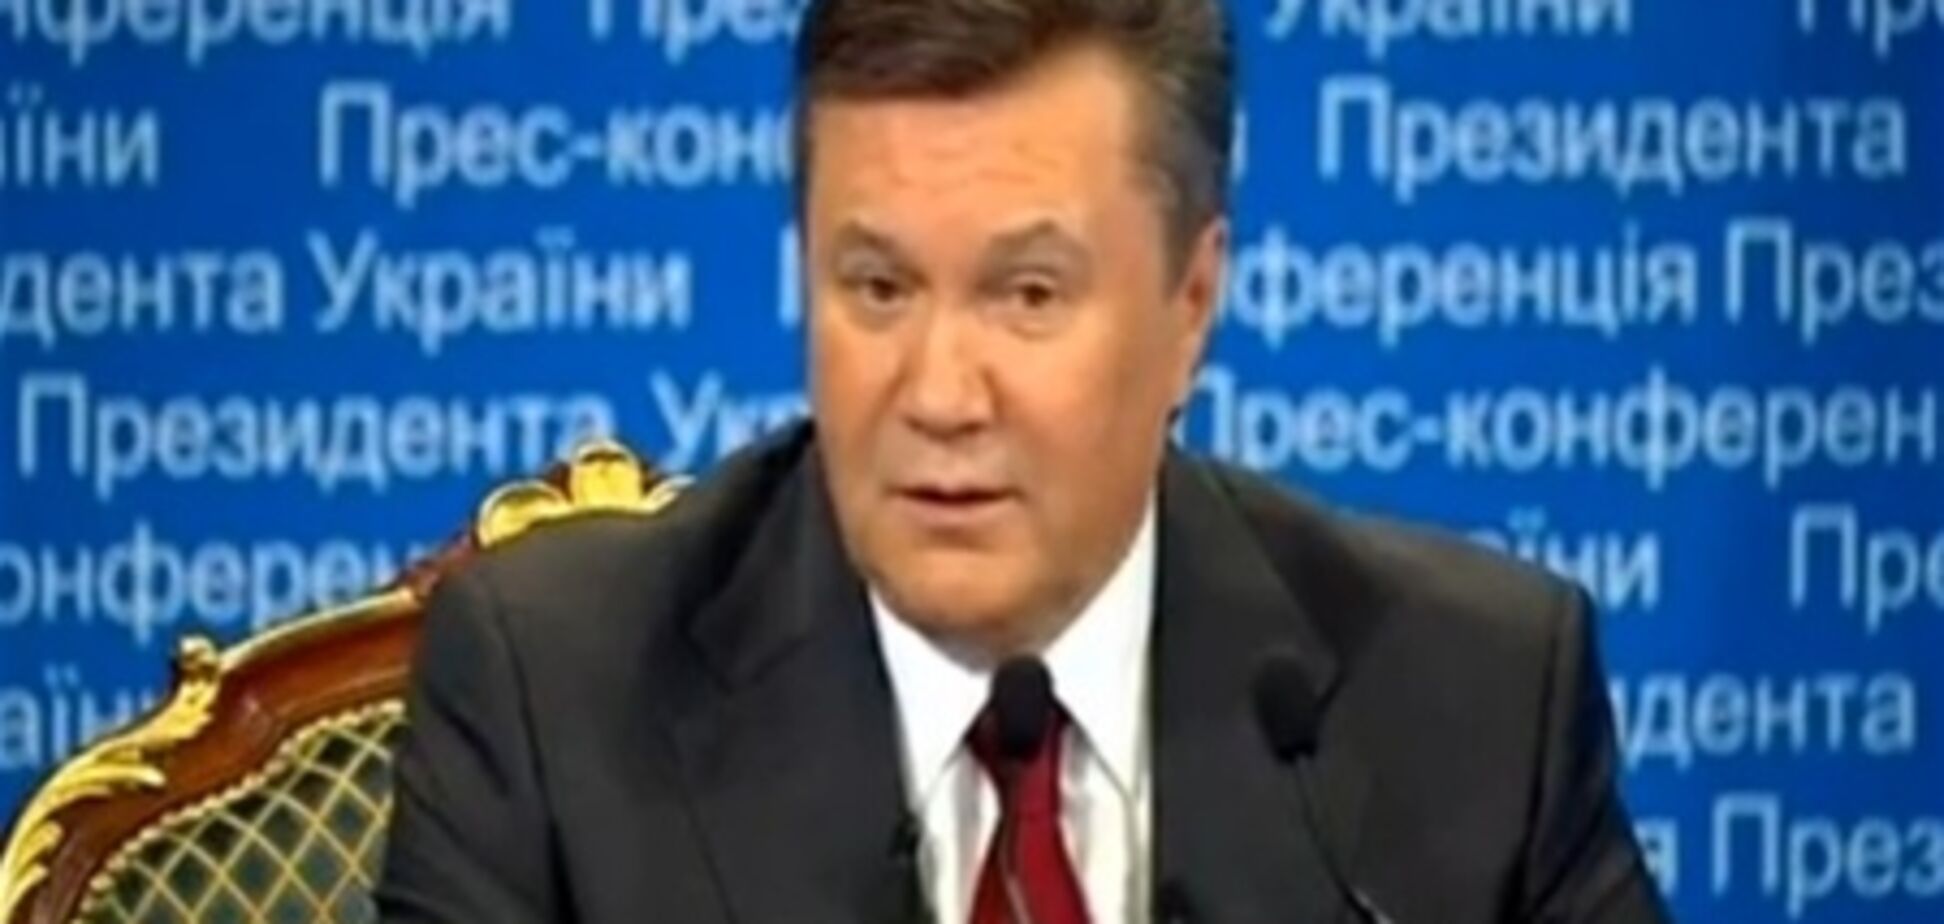 Янукович в июле планирует встречу с Медведевым